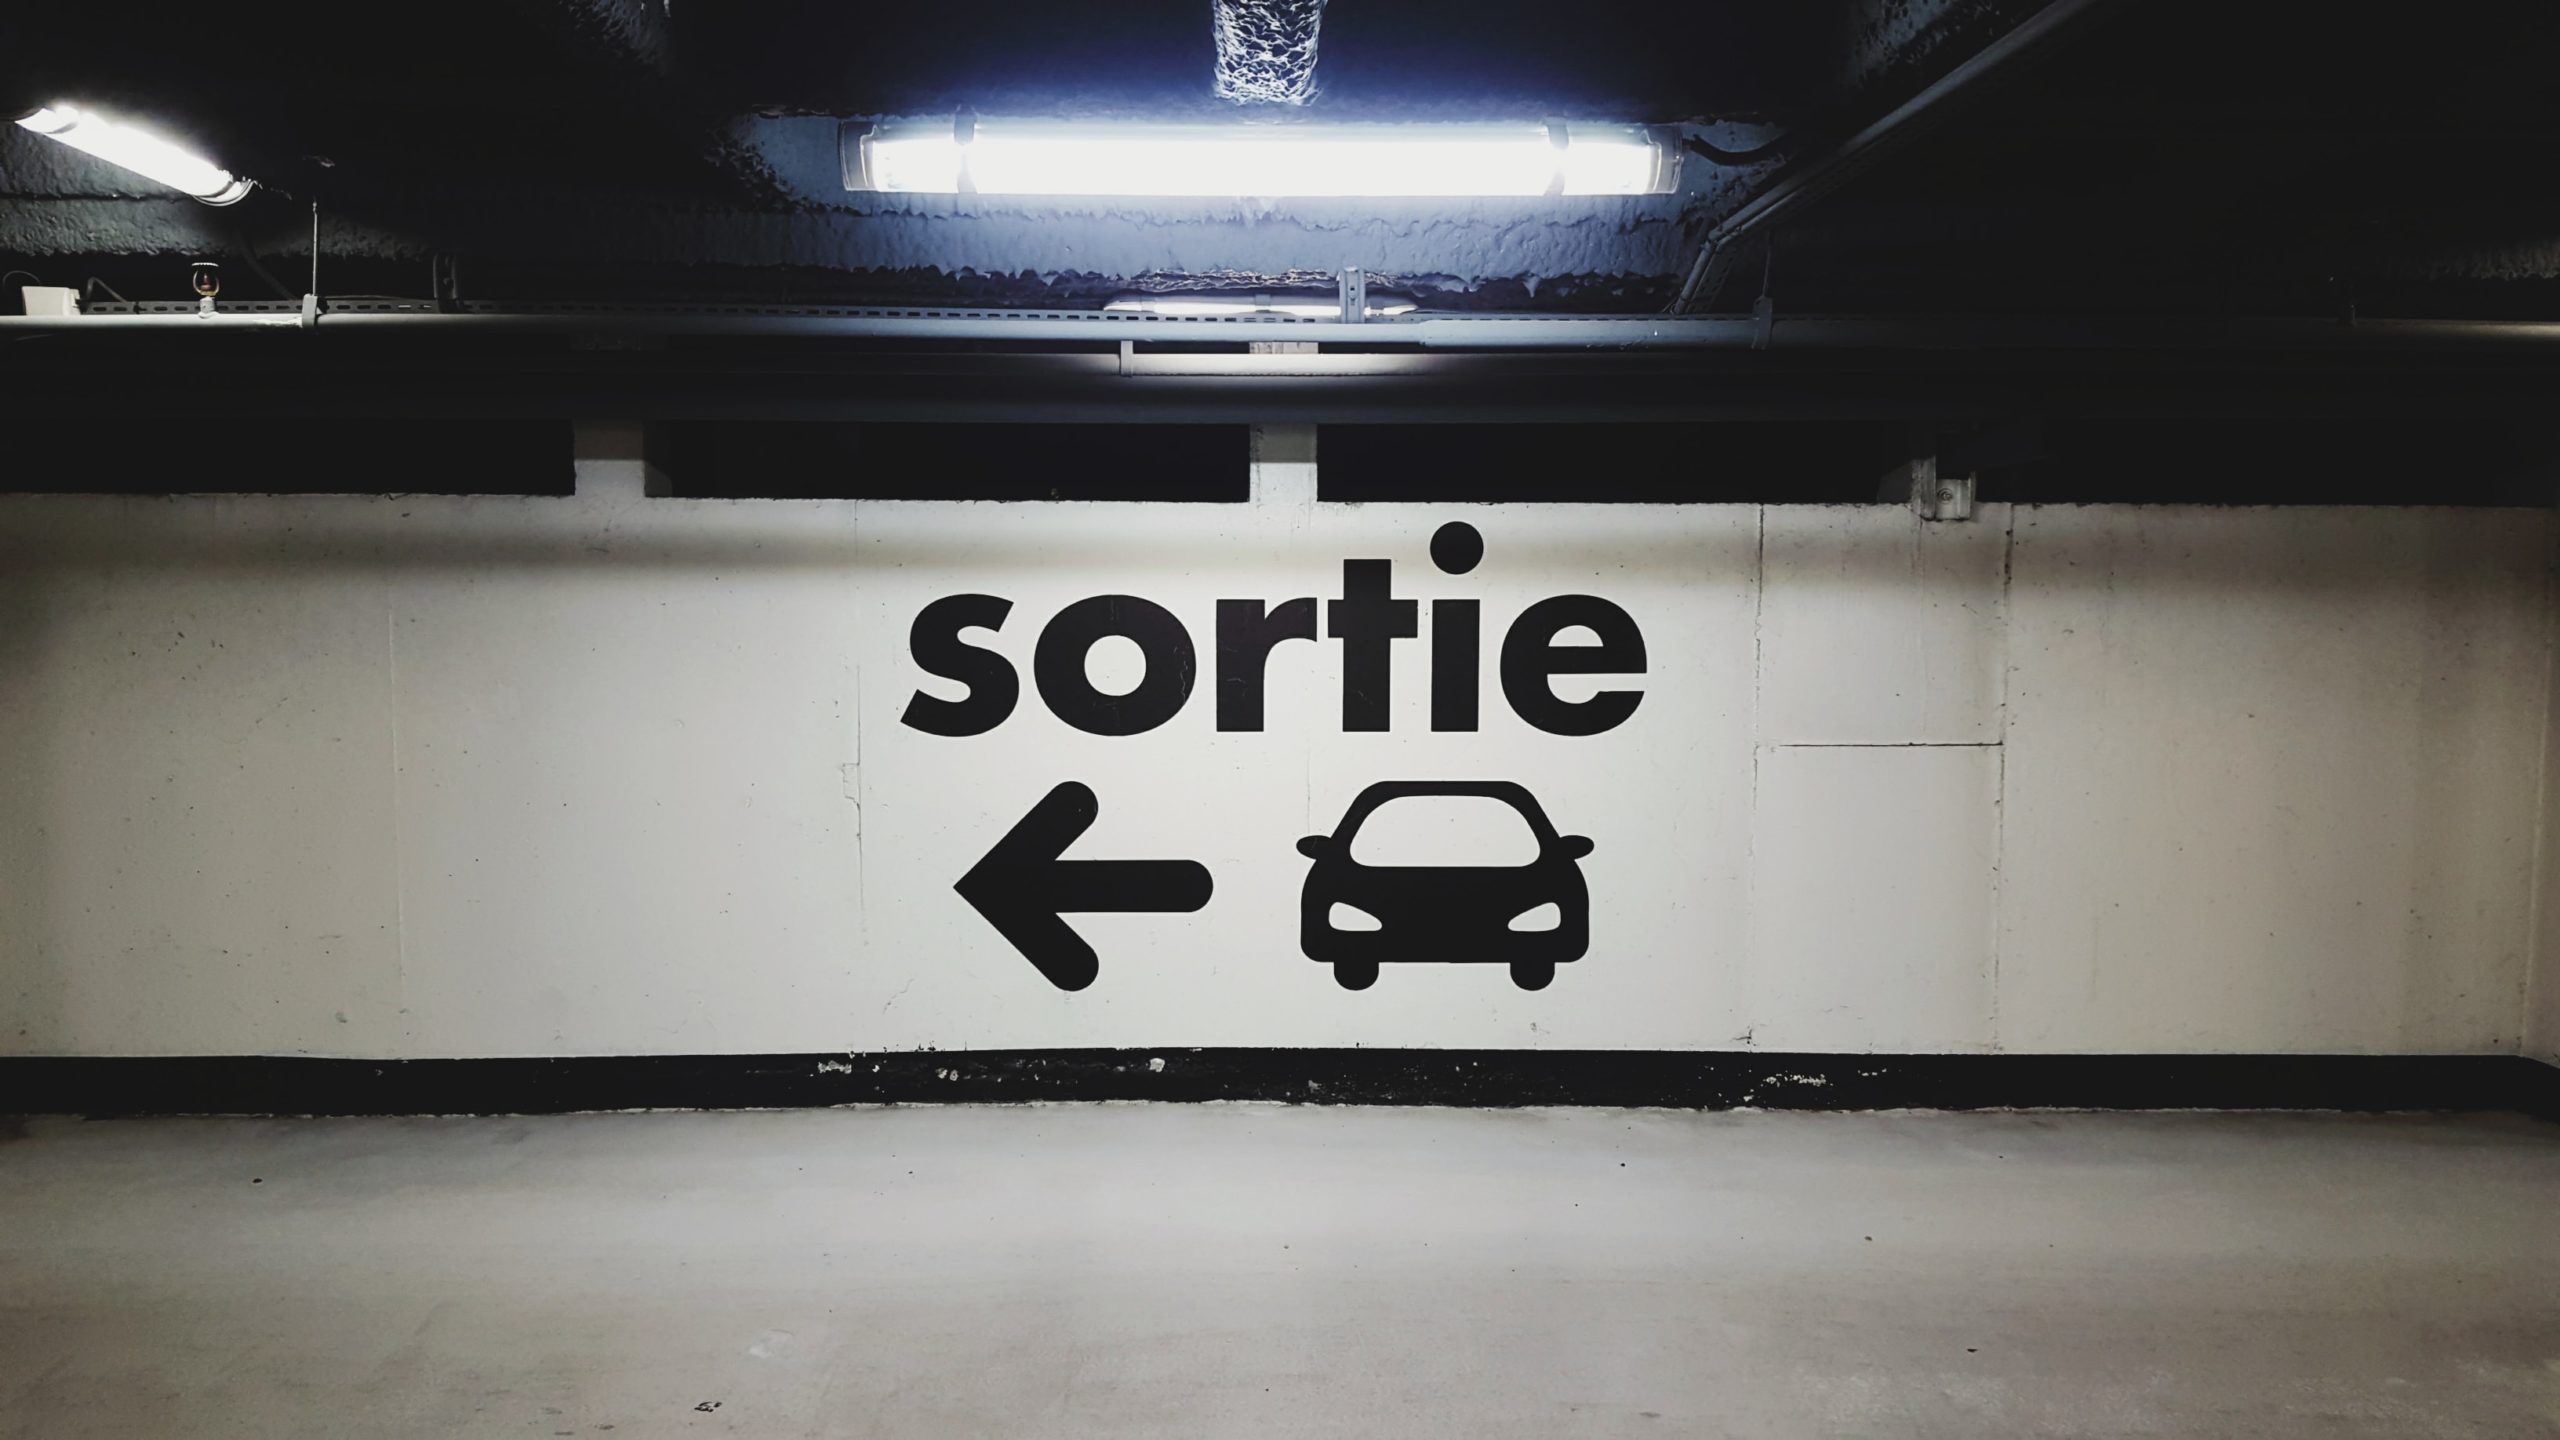 Mural in het Frans met het woord Sortie